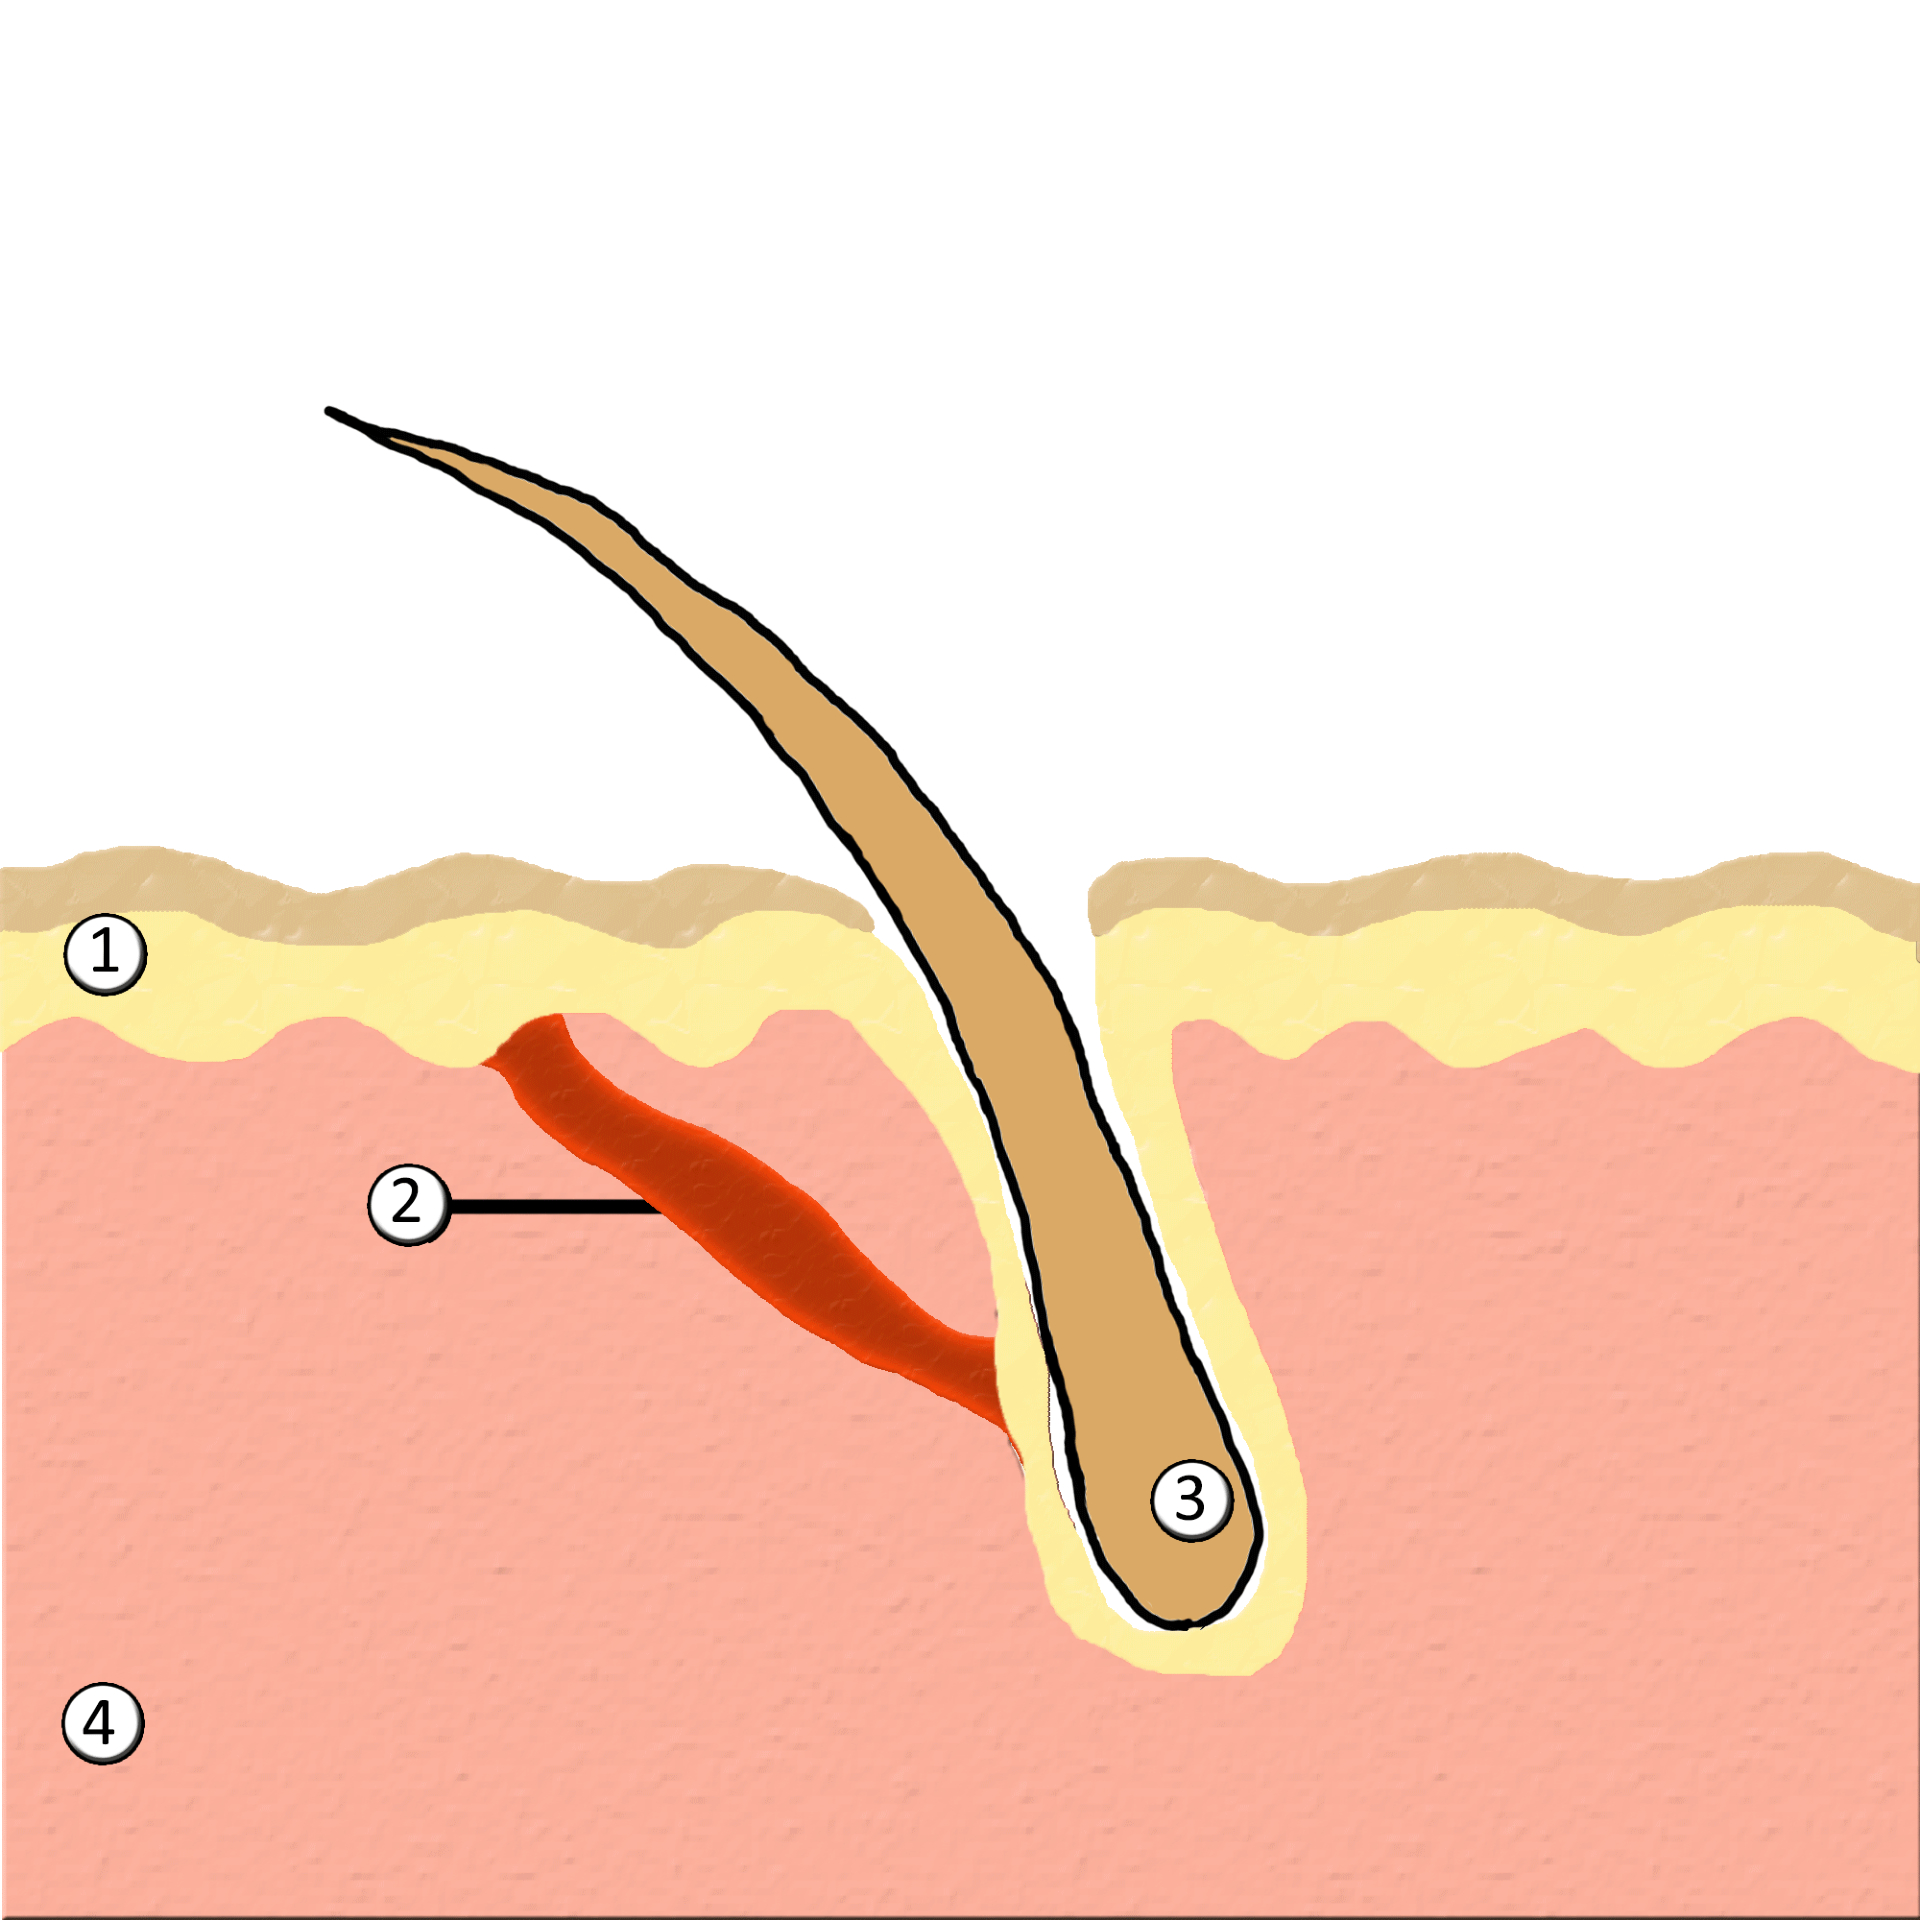 1) Эпидермис 2) Мускул Arrector pili 3) Волосяной фолликул 4) Дерма.&nbsp;Диаграма показывает, как мышца arrector pili соединяется с волосяным фолликулом и эпидермисом. Сокращение этого мускула приводит к подъему волоса и возникновению гусиной кожи